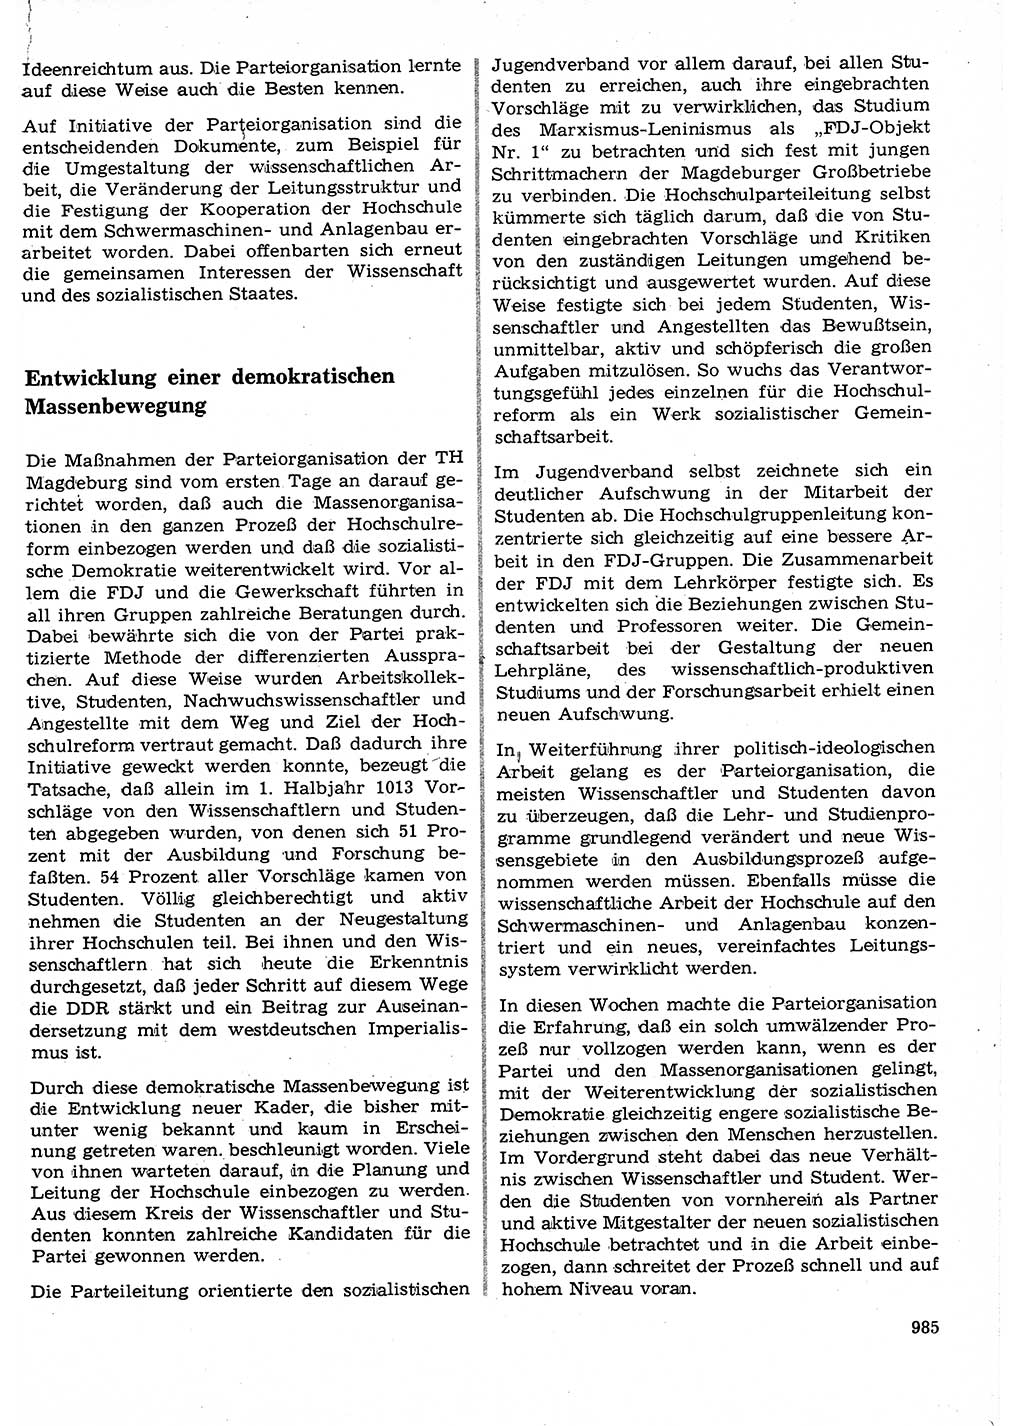 Neuer Weg (NW), Organ des Zentralkomitees (ZK) der SED (Sozialistische Einheitspartei Deutschlands) für Fragen des Parteilebens, 23. Jahrgang [Deutsche Demokratische Republik (DDR)] 1968, Seite 969 (NW ZK SED DDR 1968, S. 969)